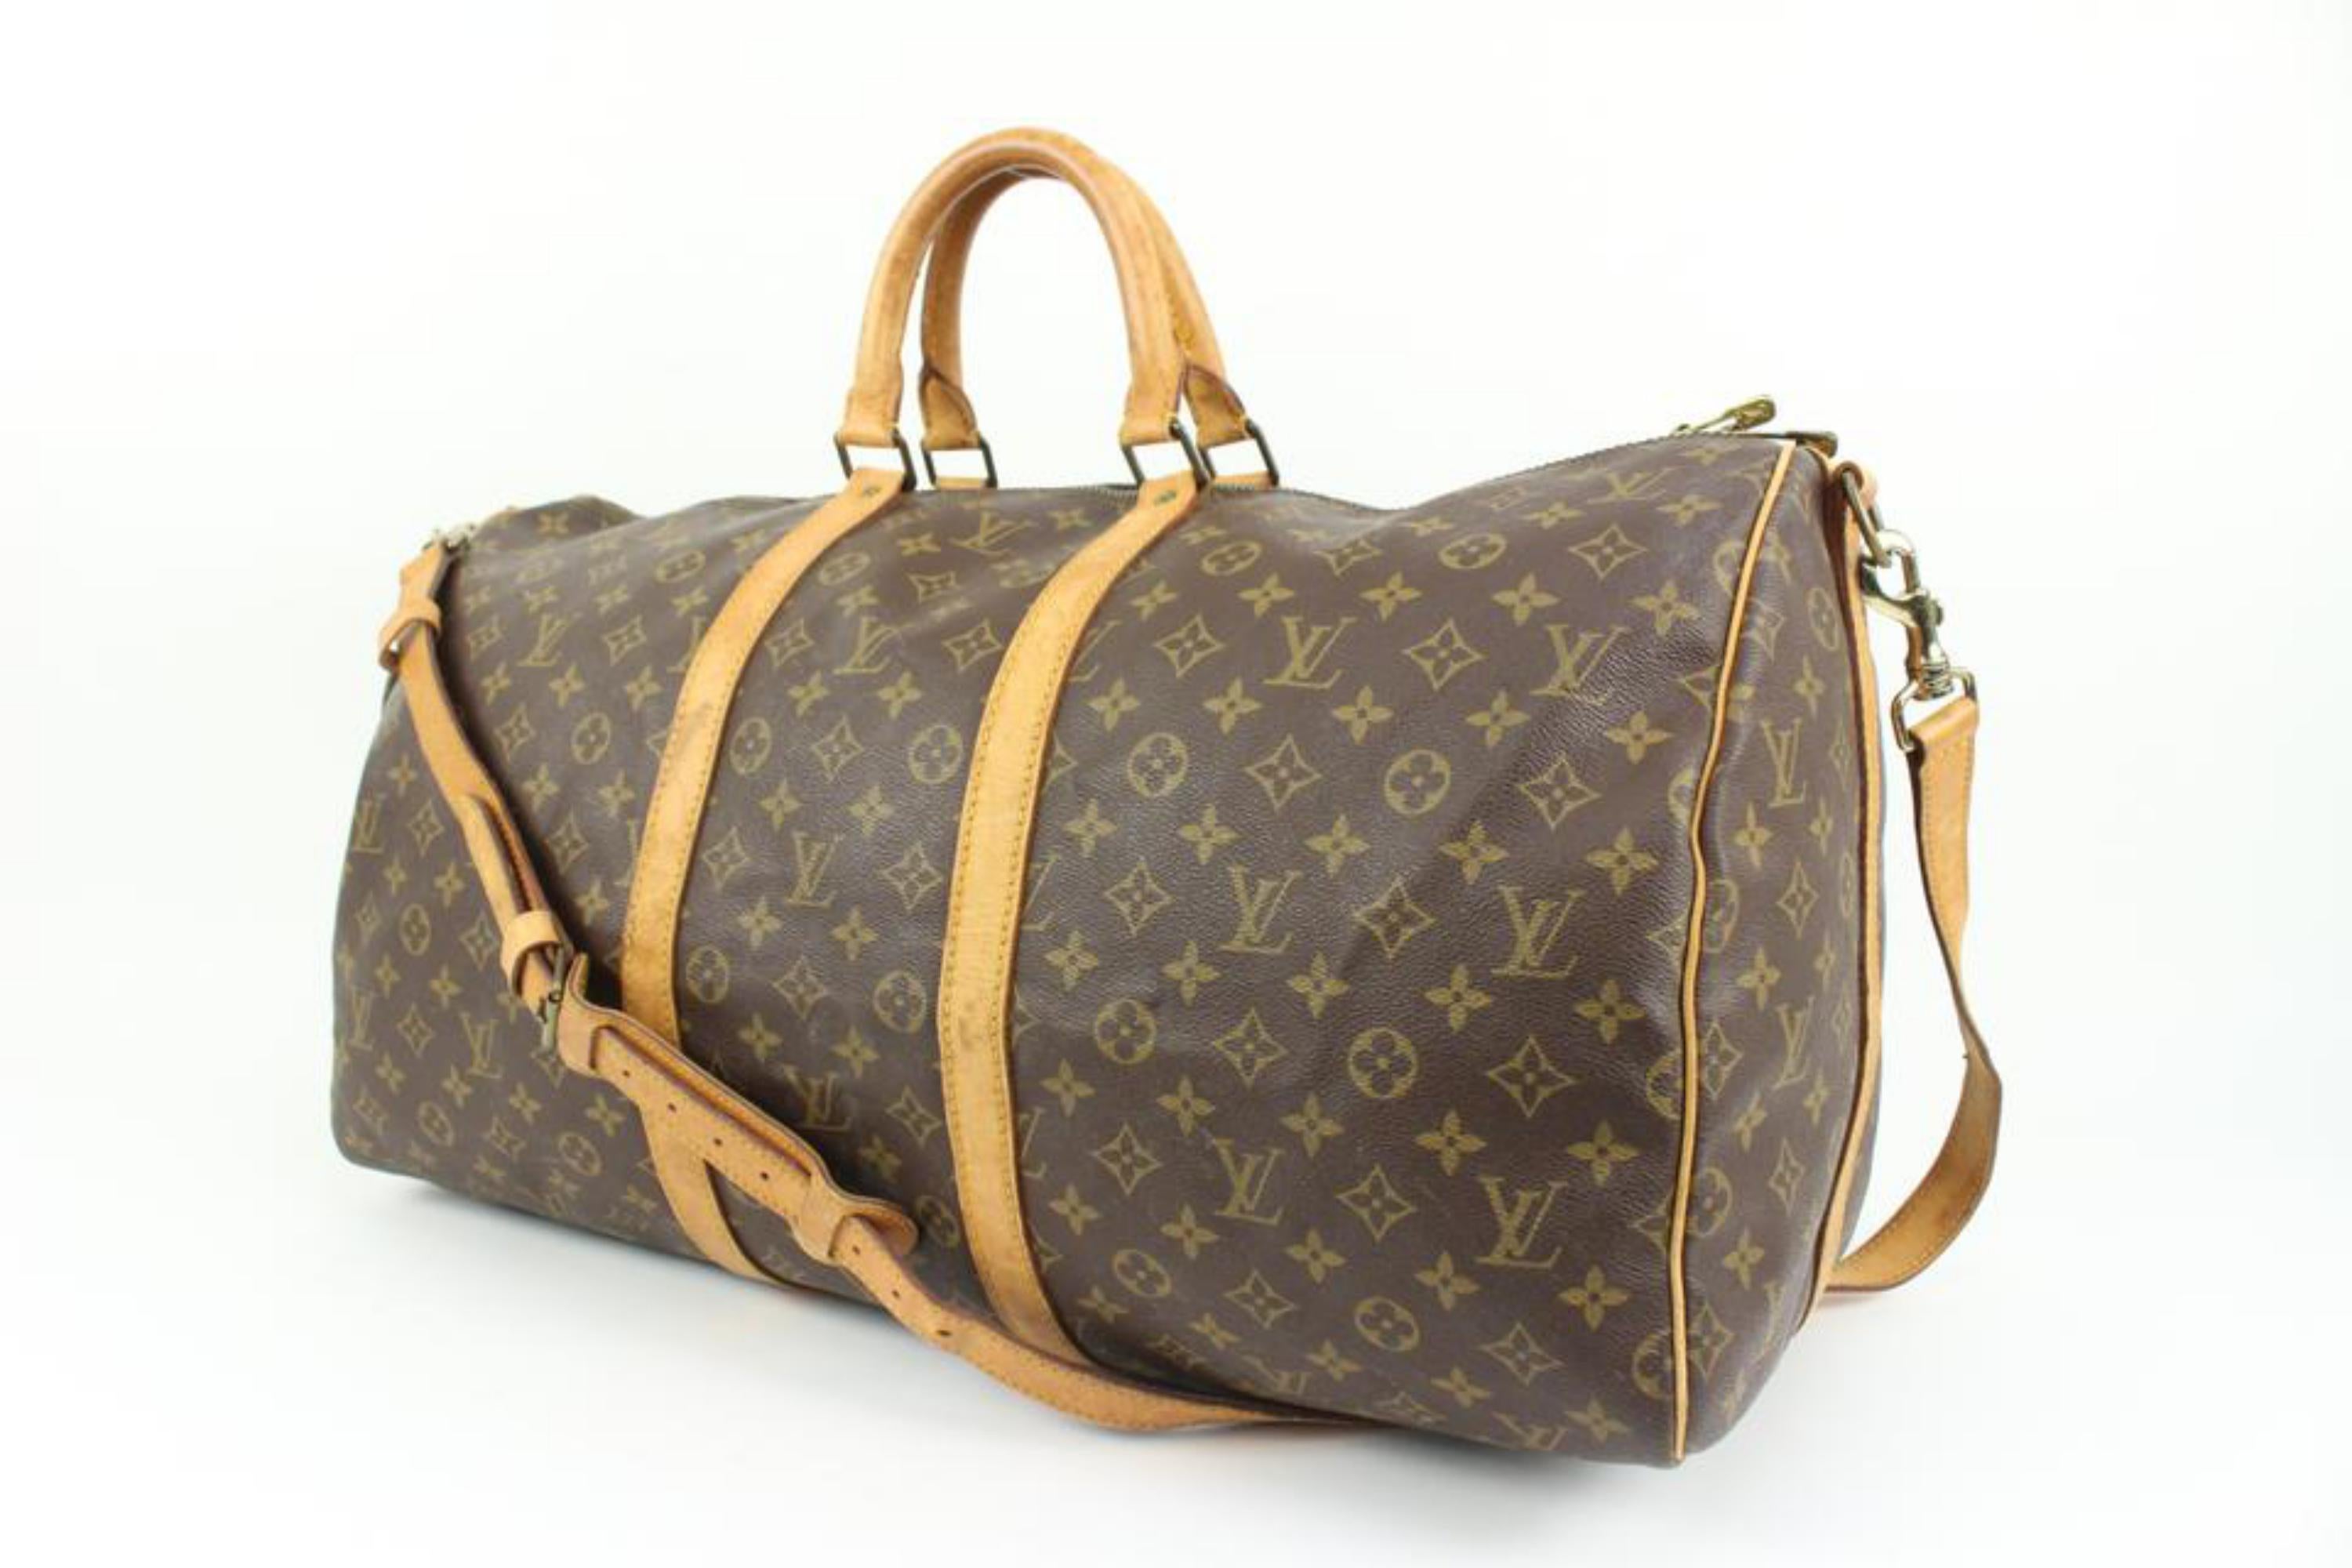 Louis Vuitton Monogram Keepall Bandouliere 55 Duffle Bag mit Riemen 15lk412s
Code/Zeitungsnummer: 851 SD
In: Frankreich hergestellt
Maße: Länge:  22